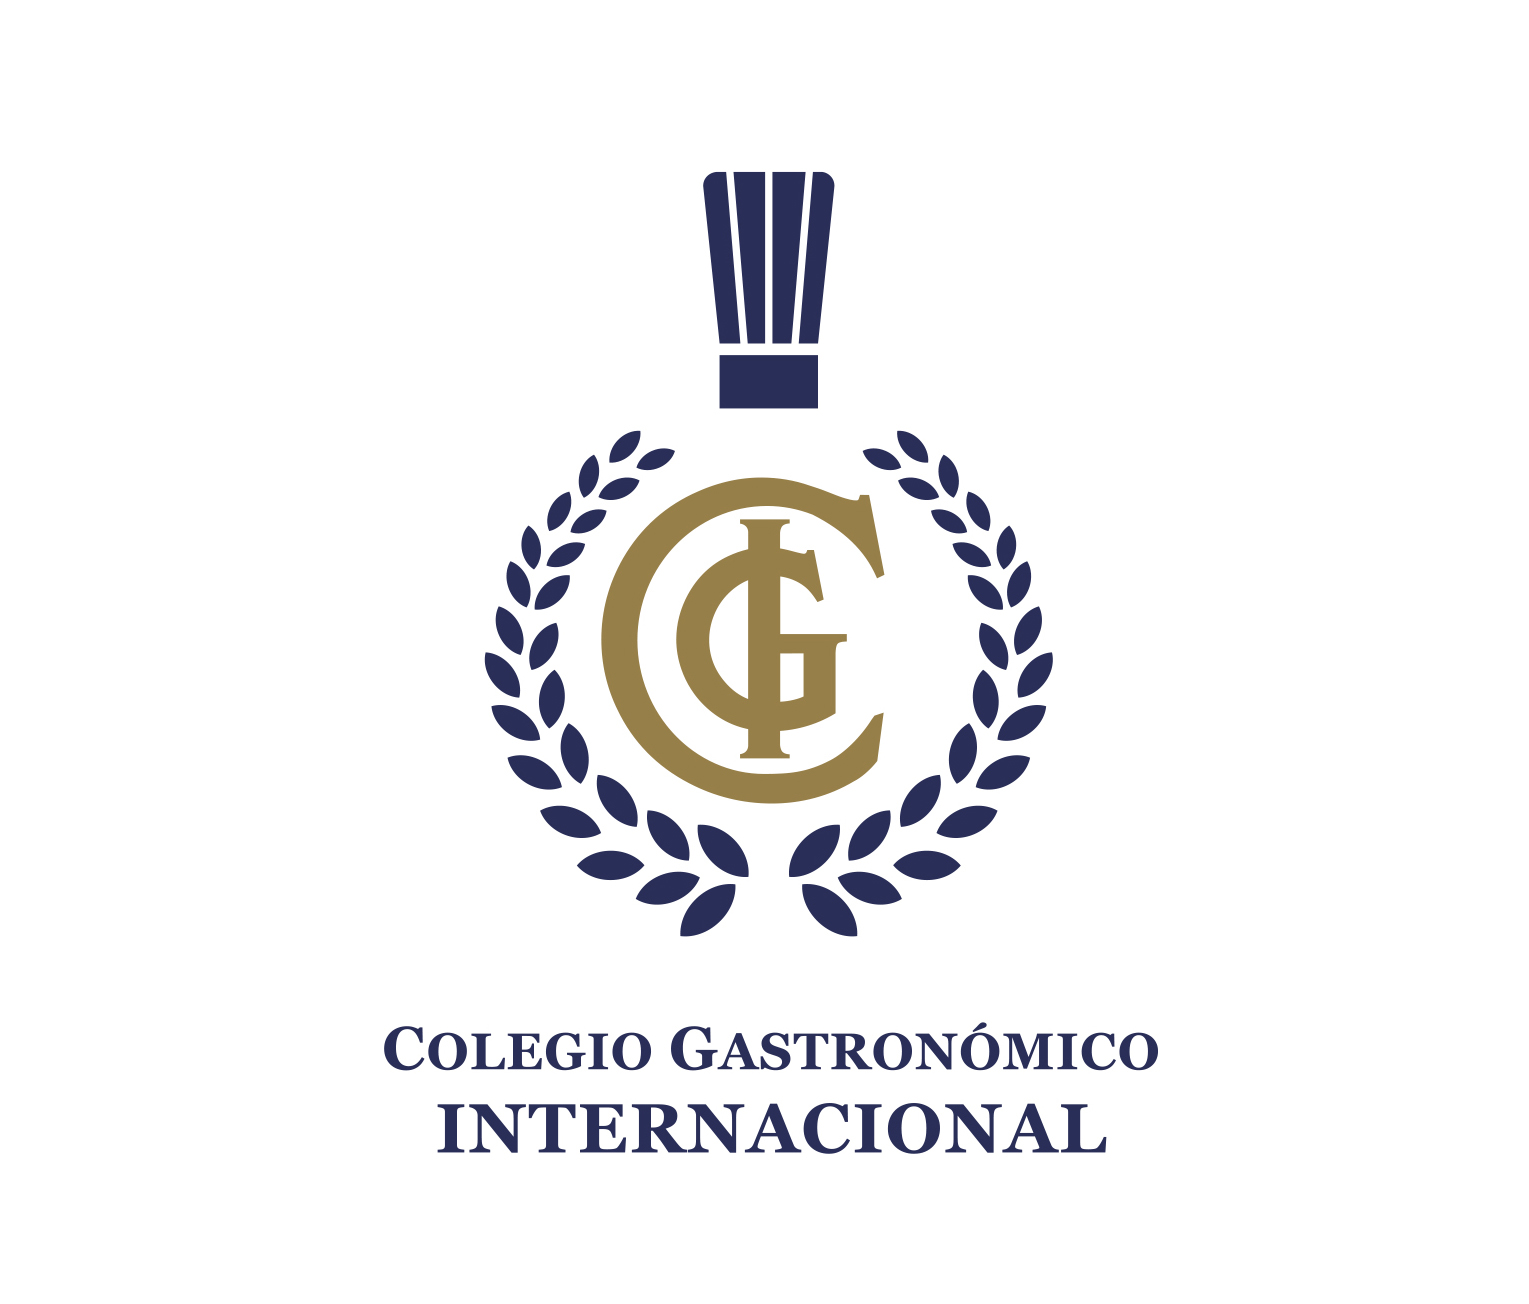 Colegio gastronómico internacional